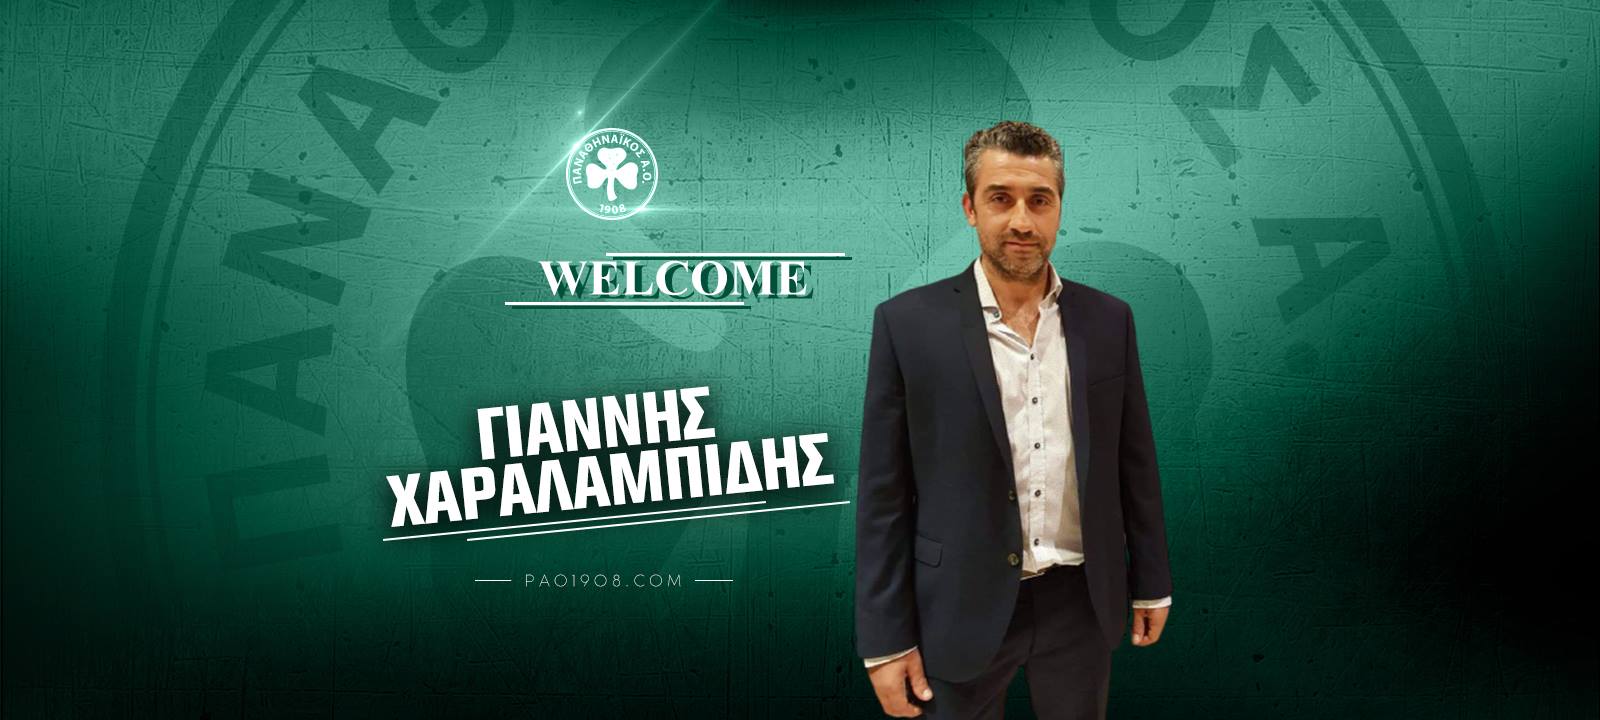 Προπονητής στη γυναικεία ομάδα ποδοσφαίρου ο Χαραλαμπίδης